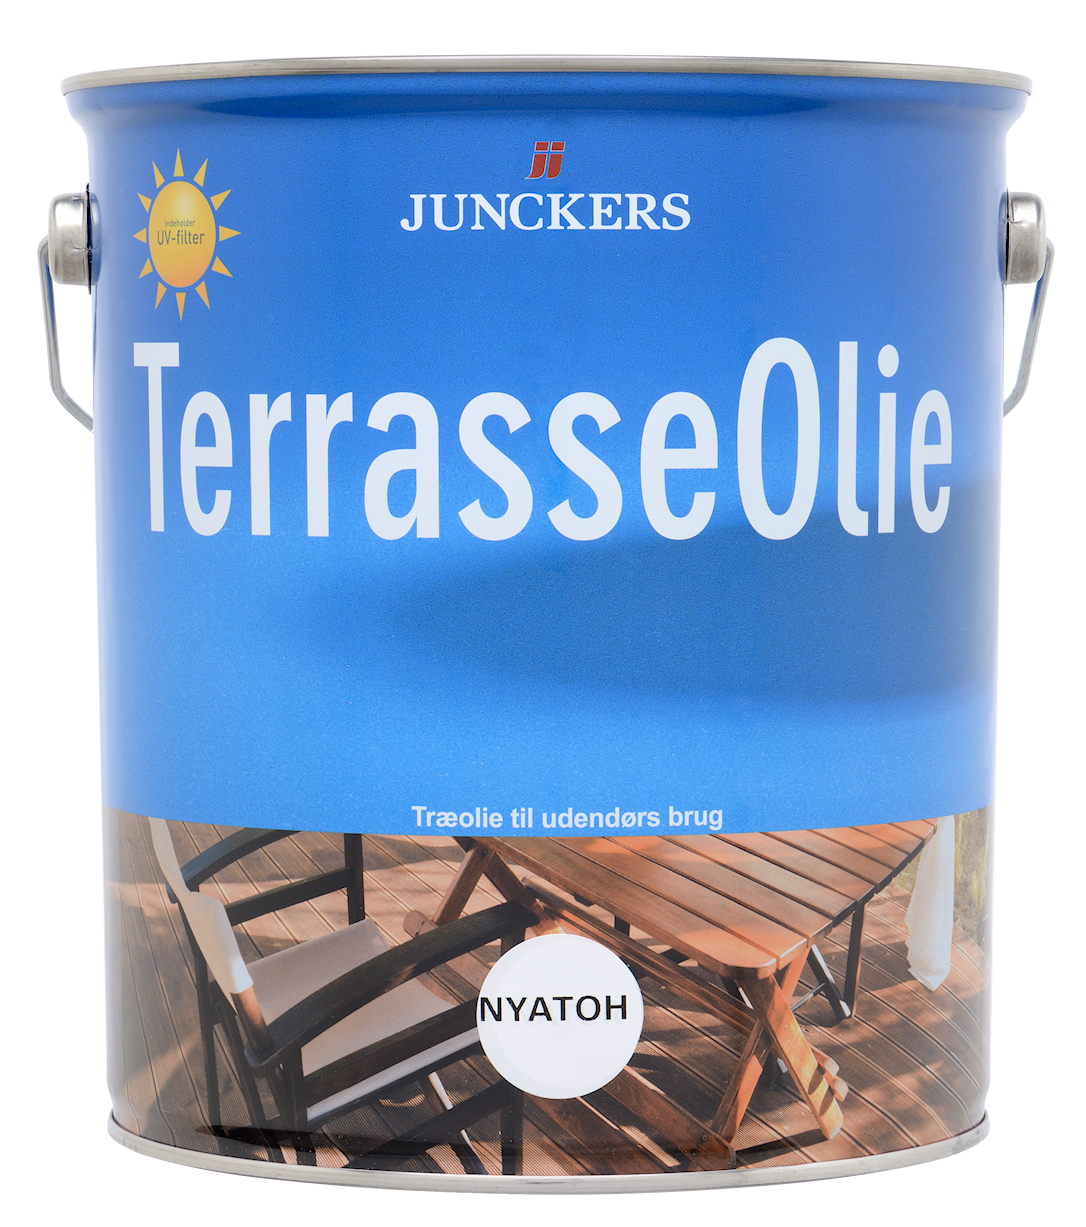 4: Junckers Terrasseolie Nyatoh 5 liter